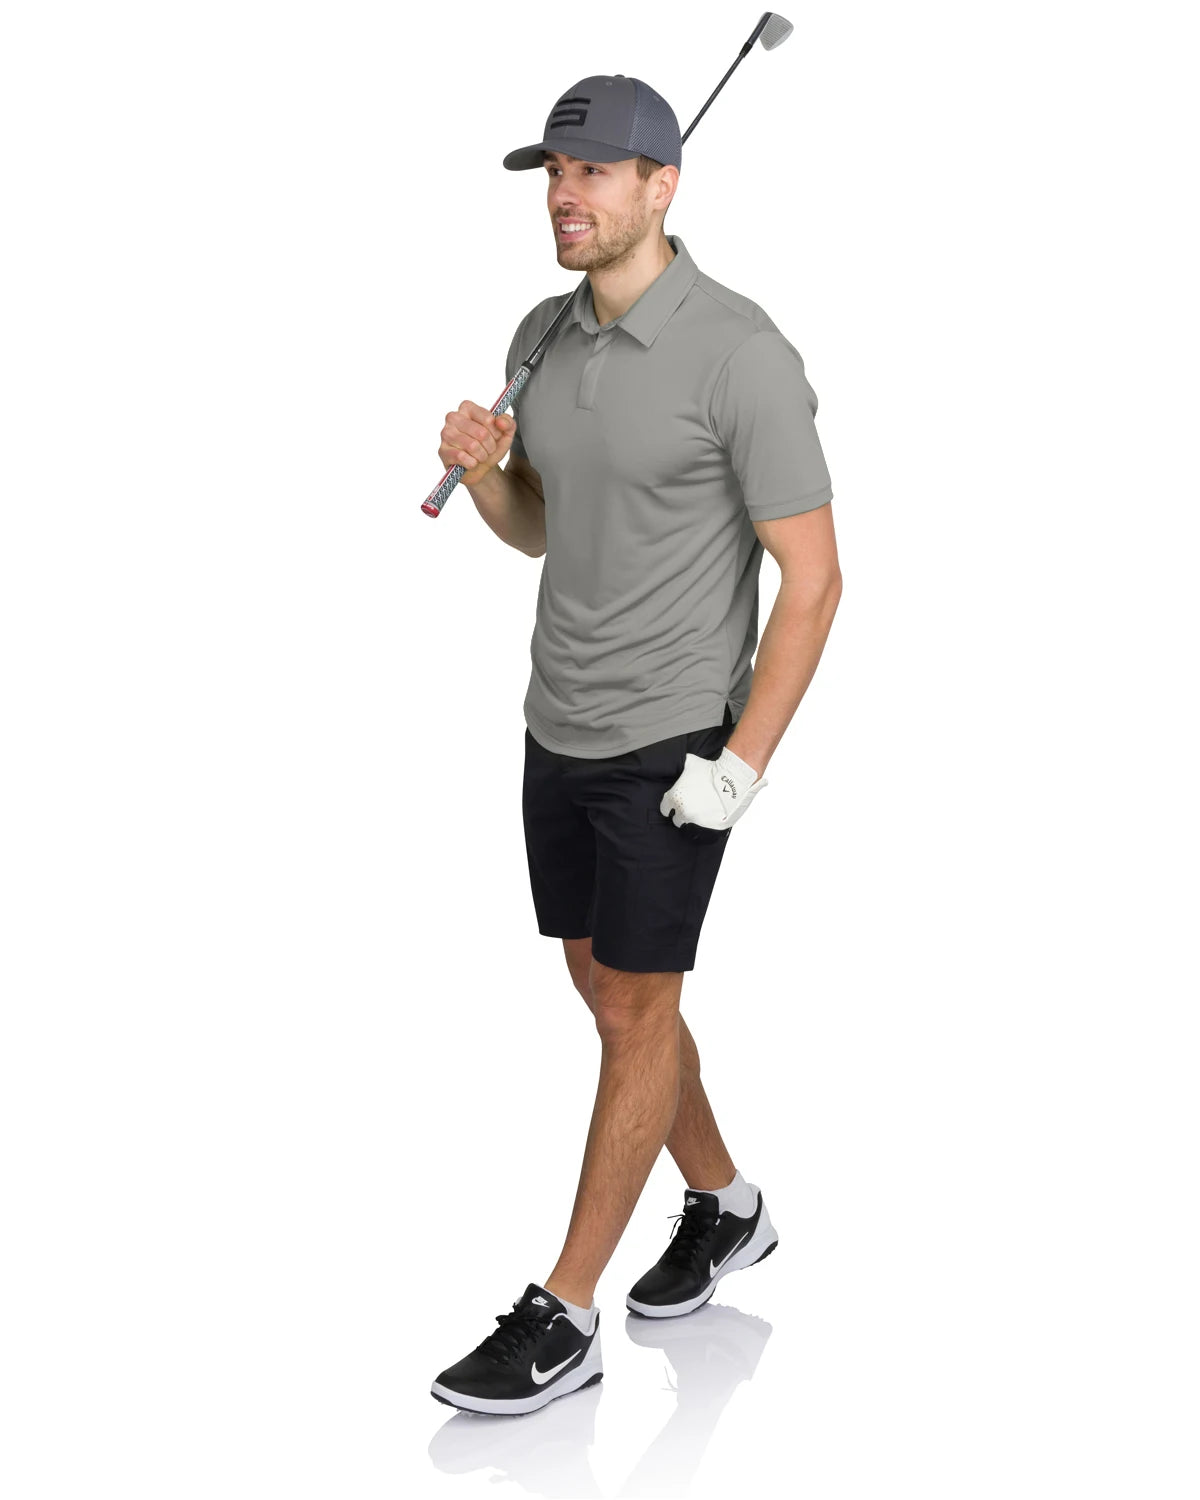 Men’s Polo Golf Shirt with Round Hem - Dry Fit 4-Way Stretch Fabric, Moisture Wicking, Anti-Odor & UPF50+. Side Split Hems